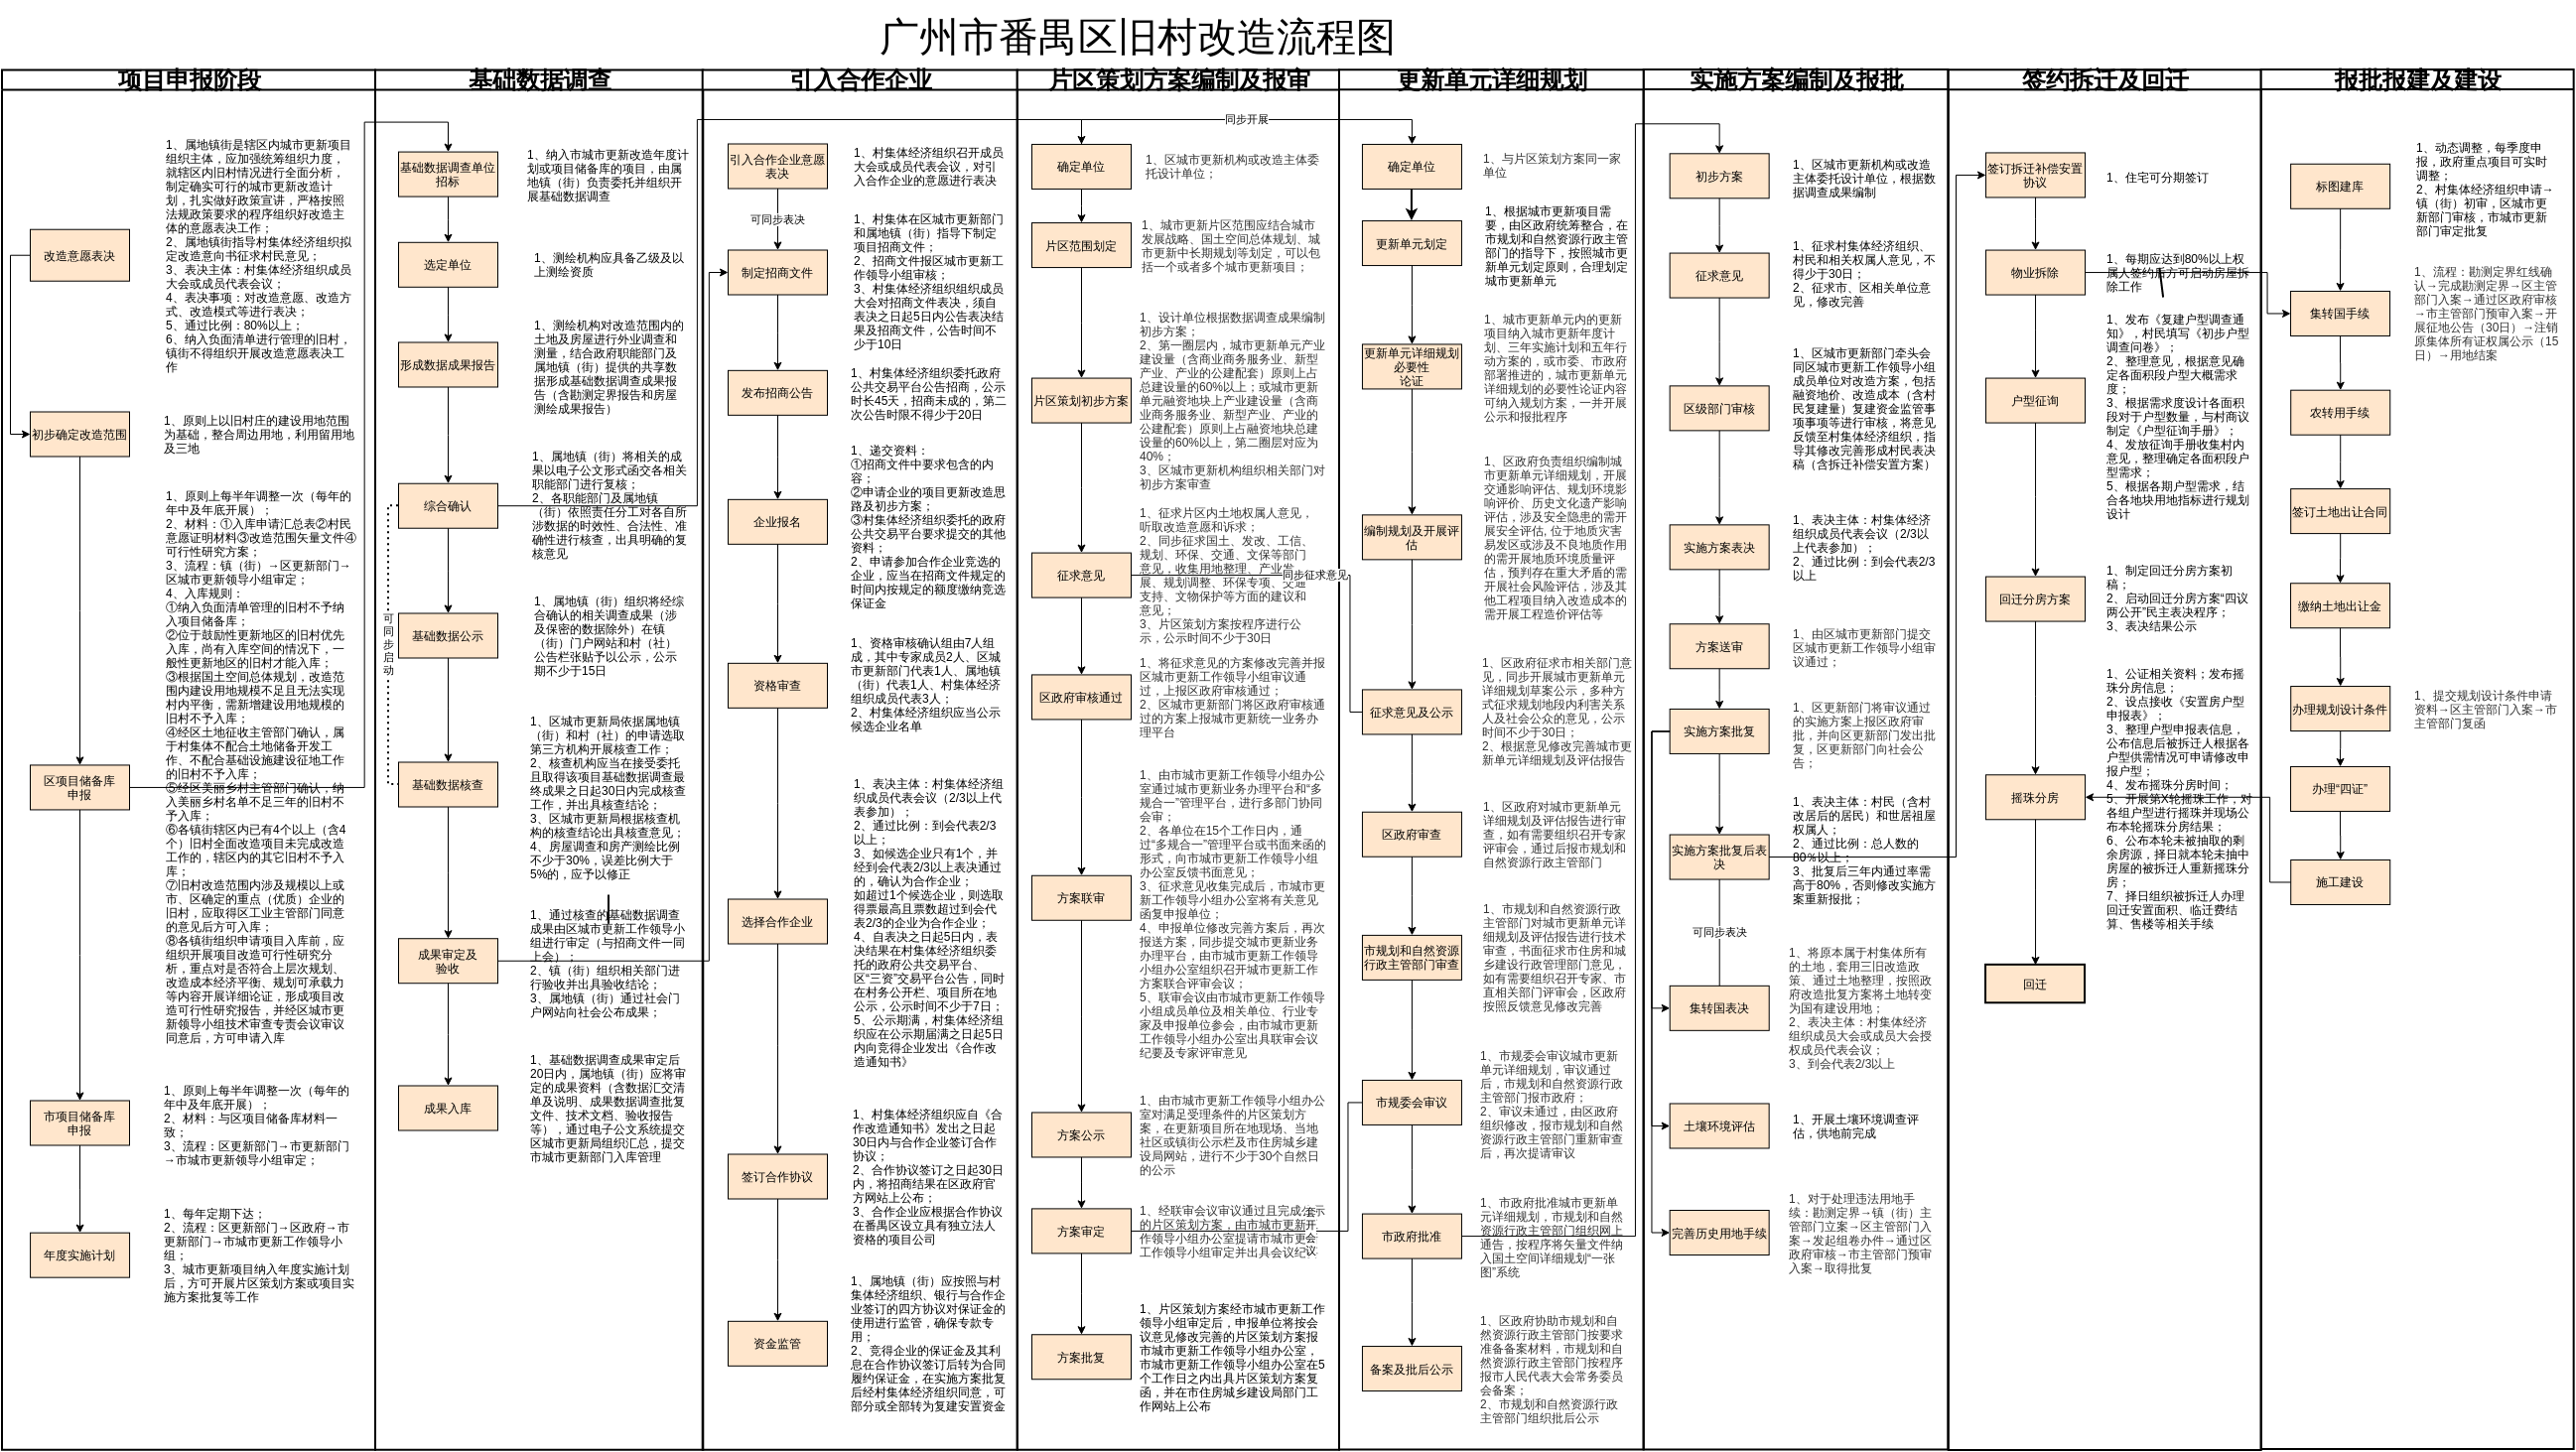 【升级版】广州市番禺区旧村改造流程图